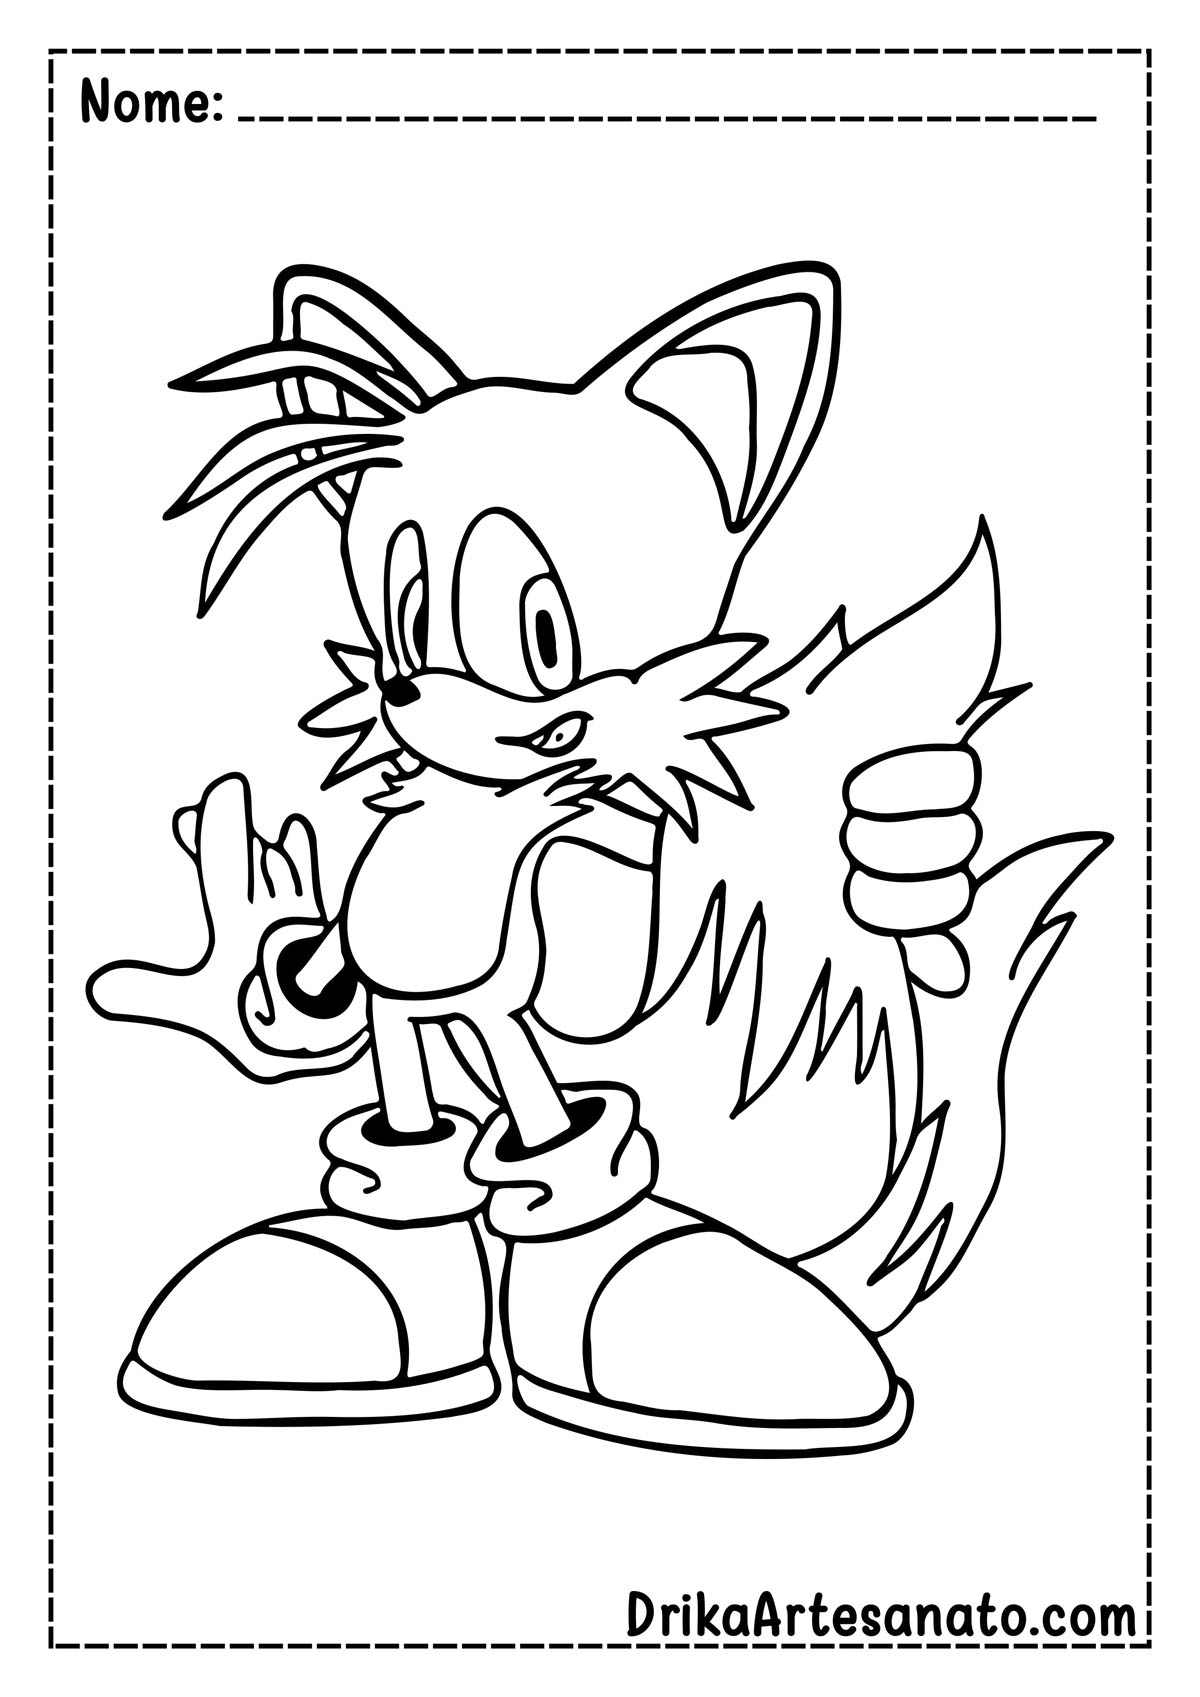 Desenho do Tails do Sonic para Imprimir